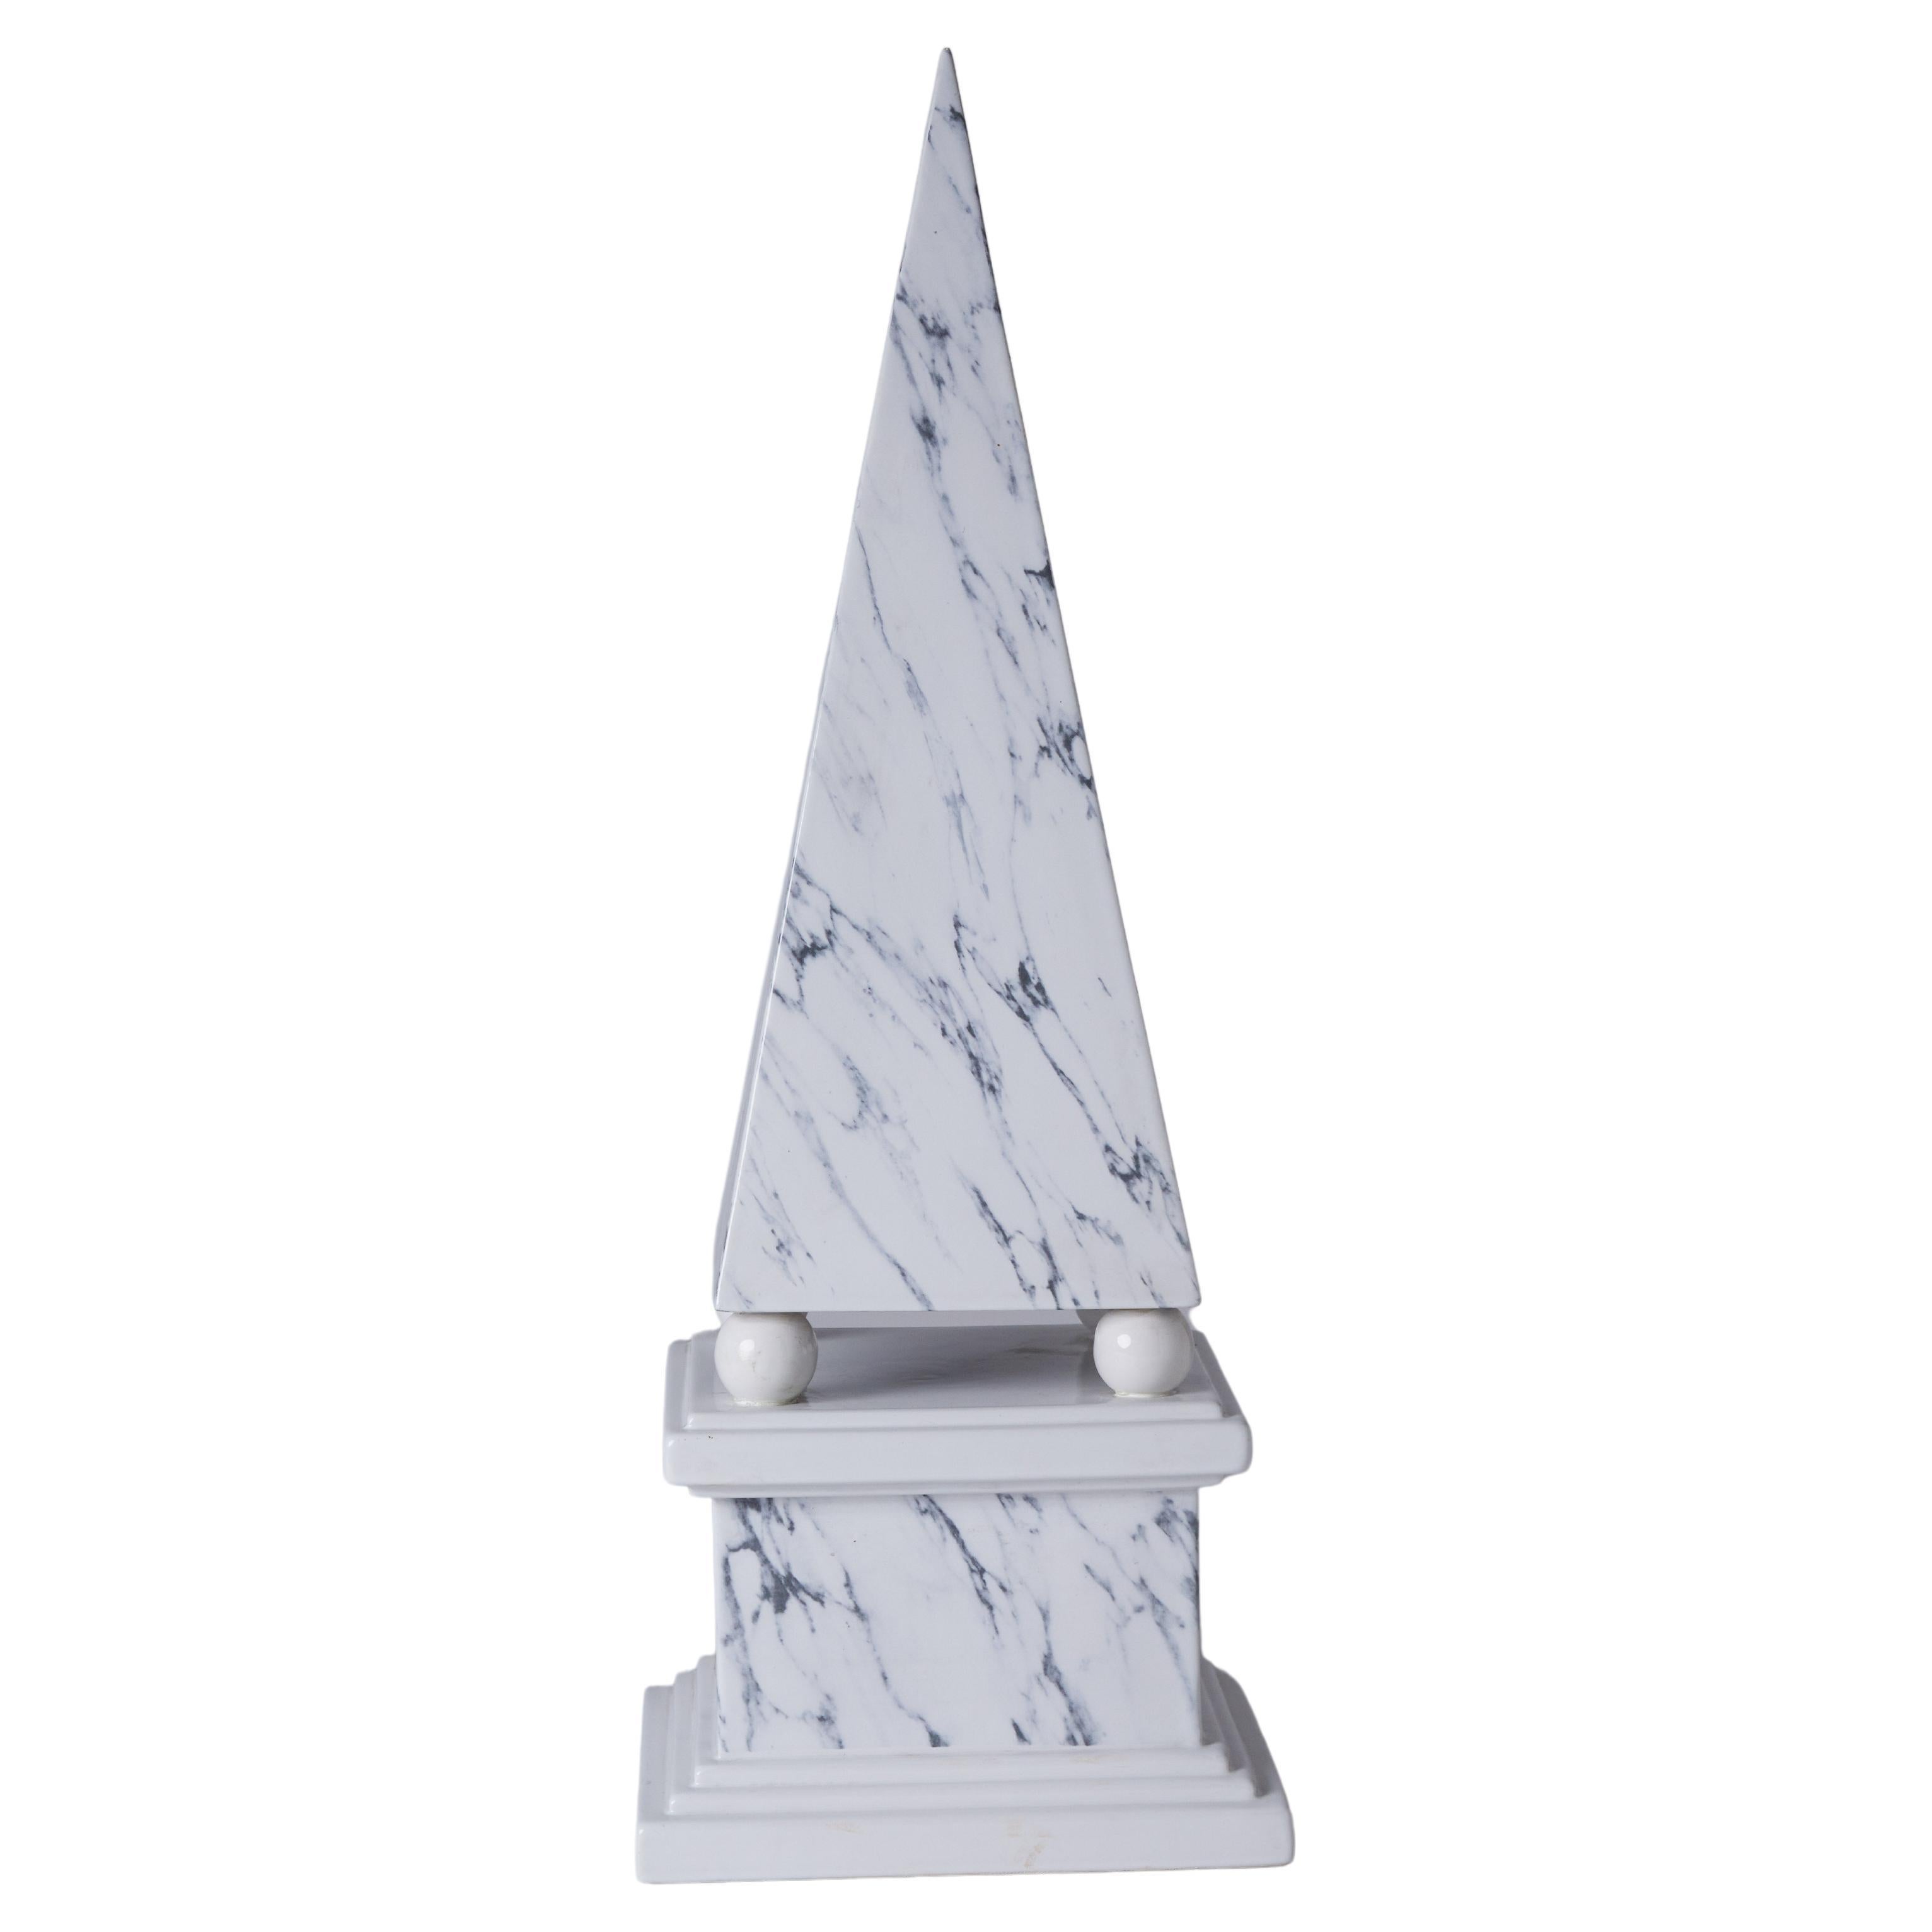 Obelisco italiano en trampantojo de mármol blanco y gris de los años 60